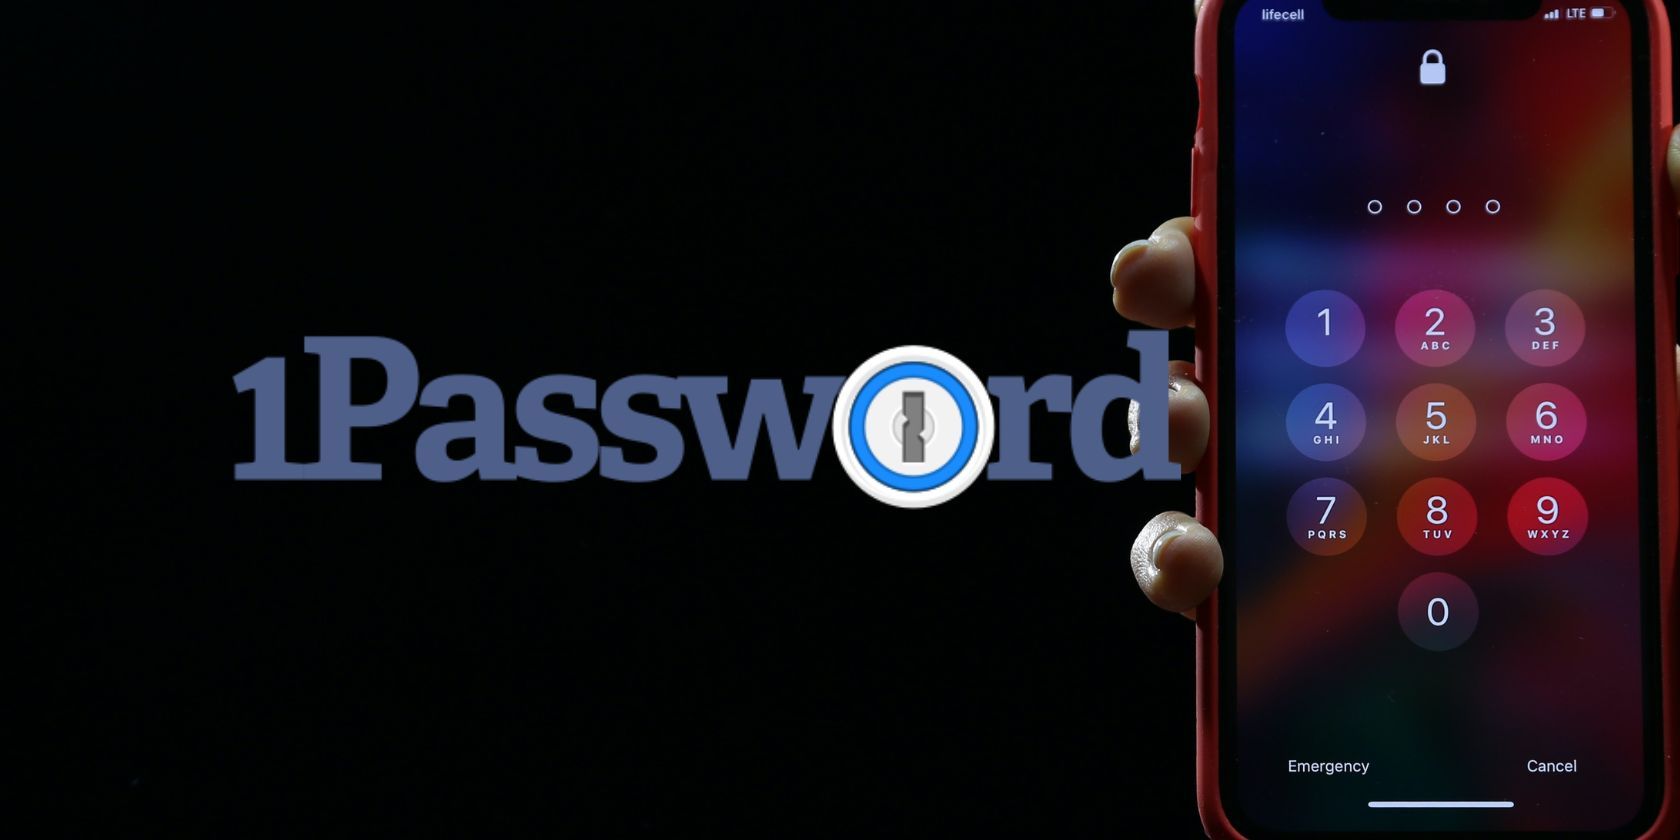 1password logo next to iphone displaying lock screen